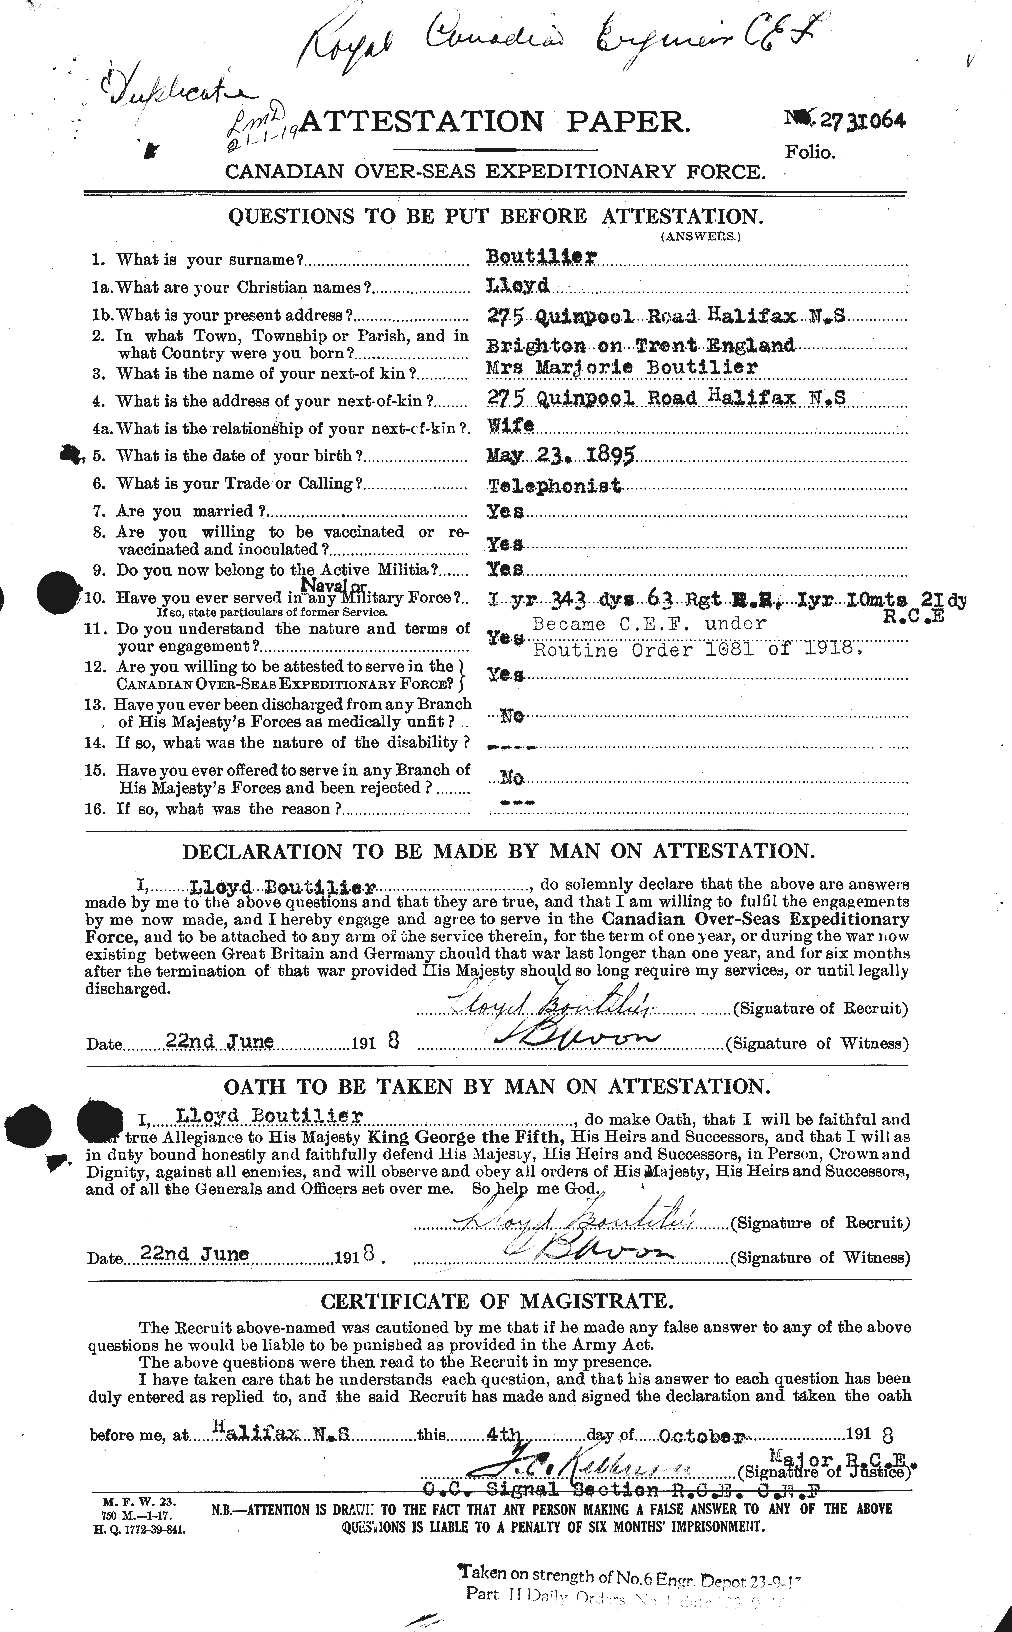 Dossiers du Personnel de la Première Guerre mondiale - CEC 254238a